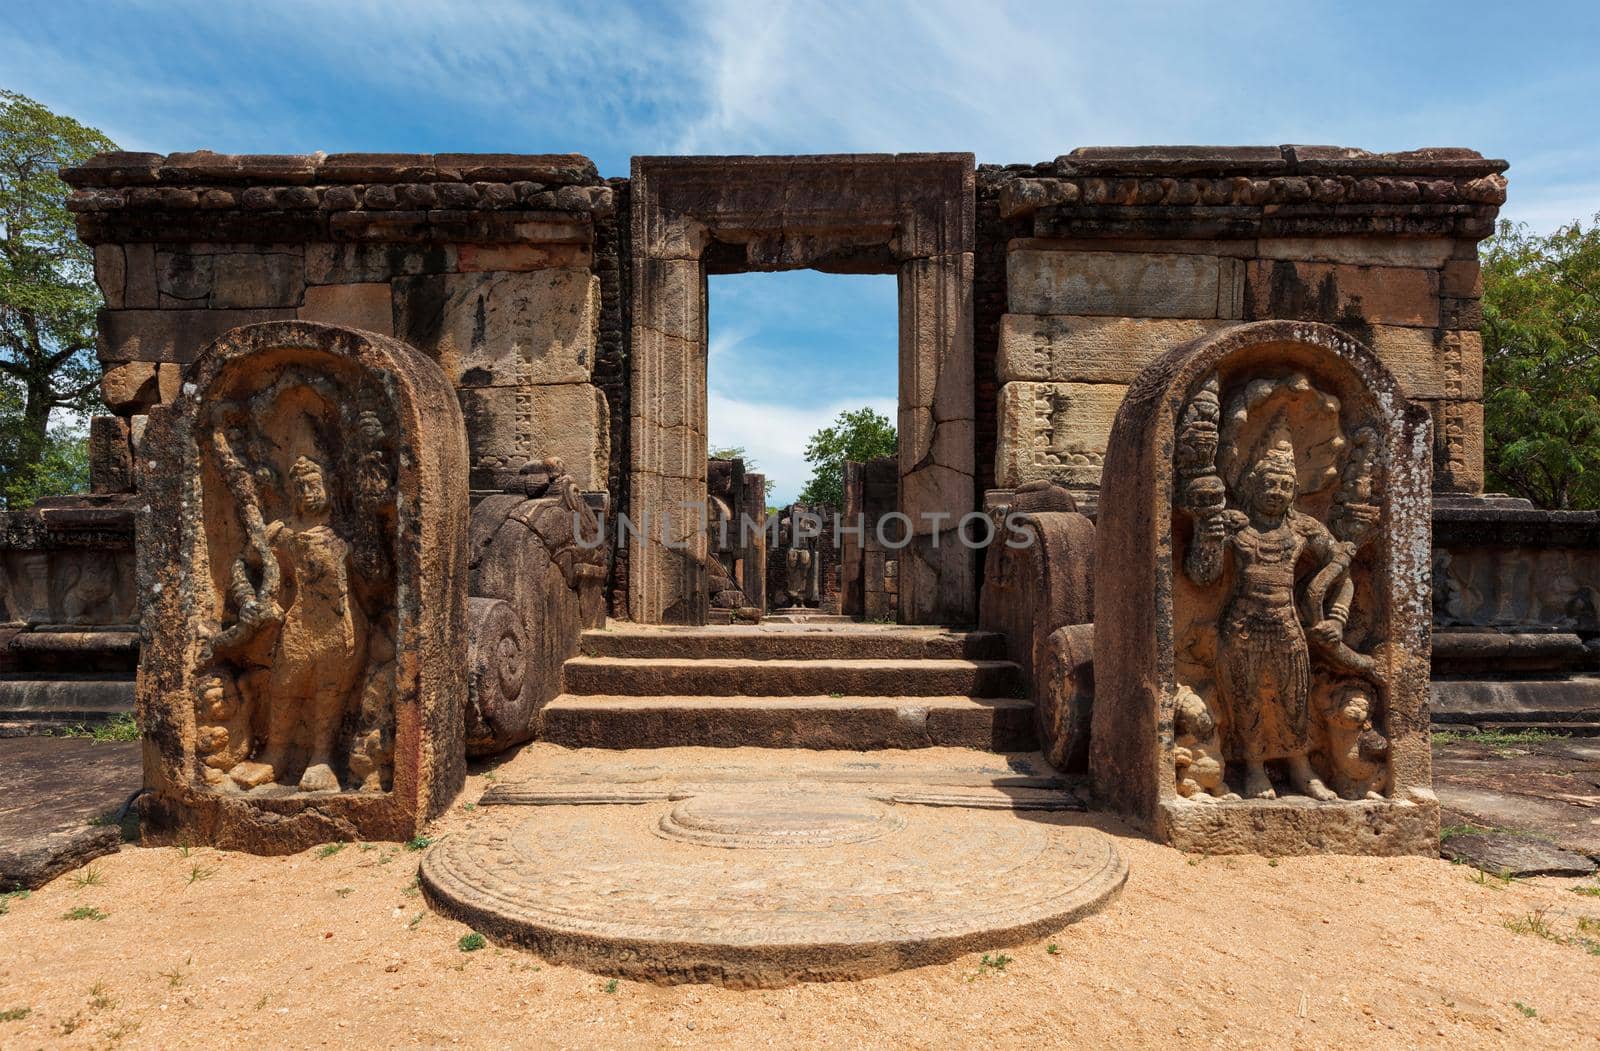 Ruins in Quadrangle group in ancient city Pollonaruwa, Sri Lanka by dimol